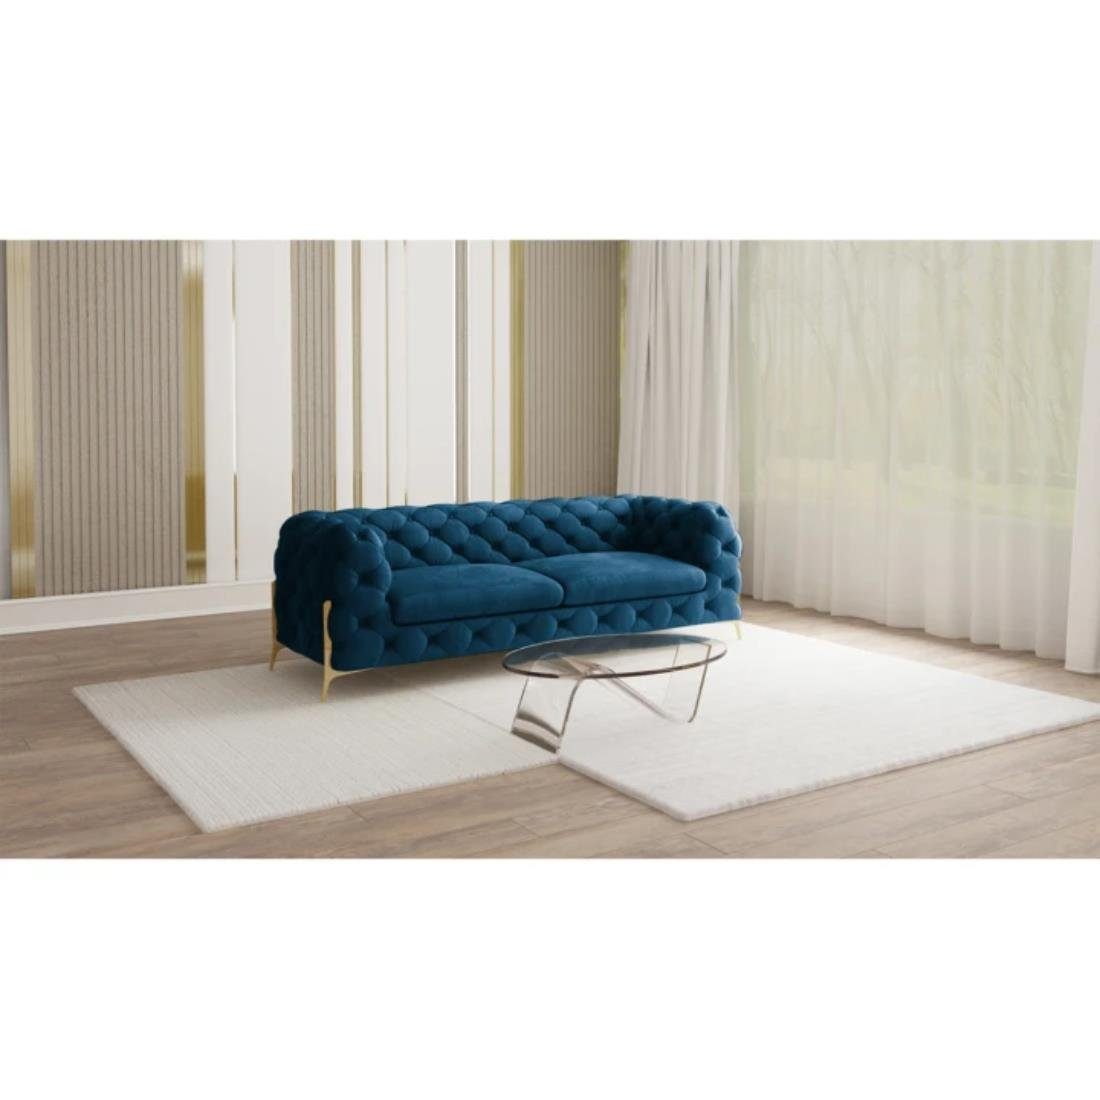 S-Style Möbel 3-Sitzer Ashley Chesterfield Sofa mit Goldene Metall Füßen, mit Wellenfederung Marineblau